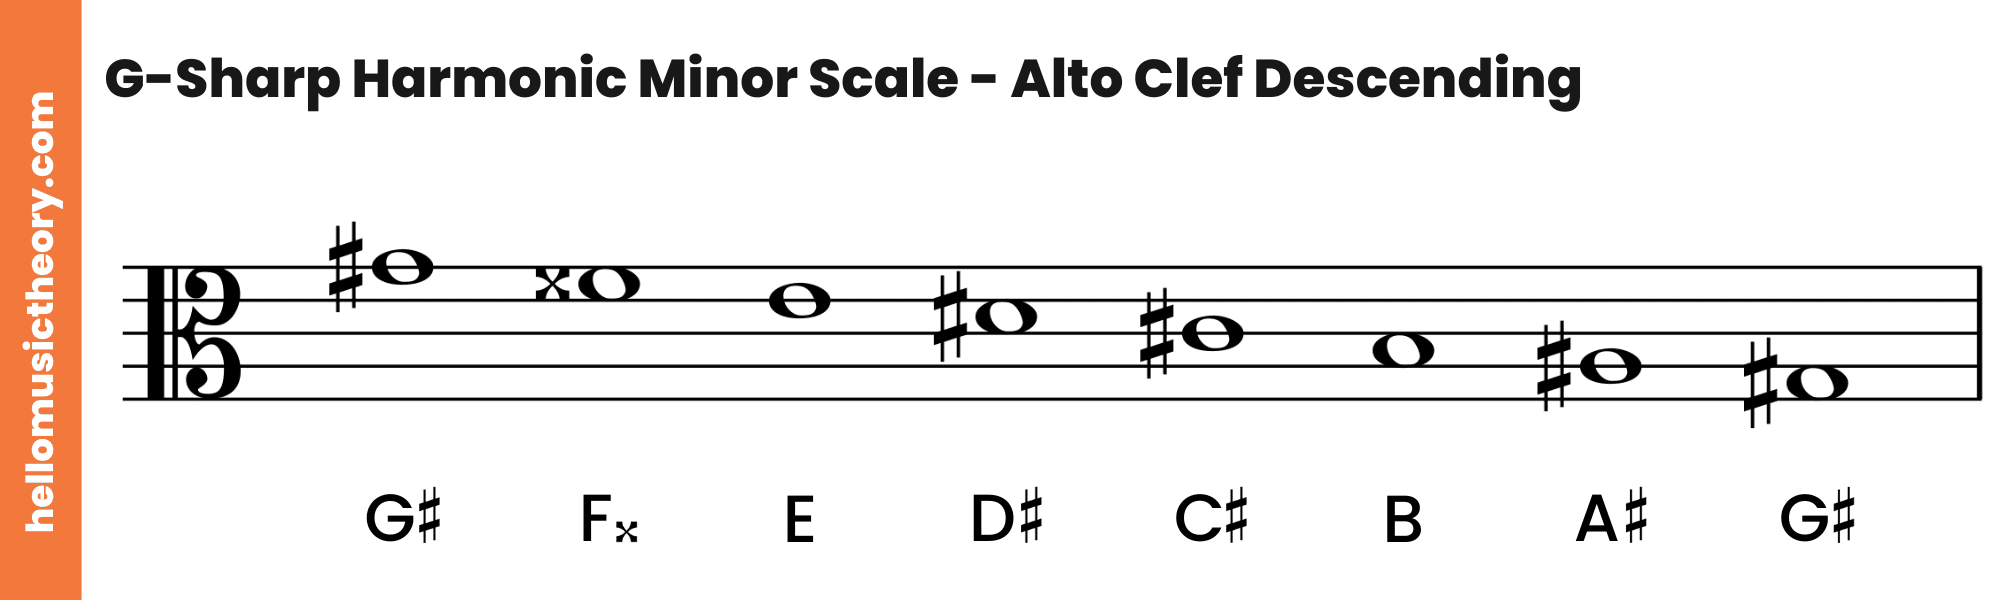 G-Sharp Harmonic Minor Scale Alto Clef Descending